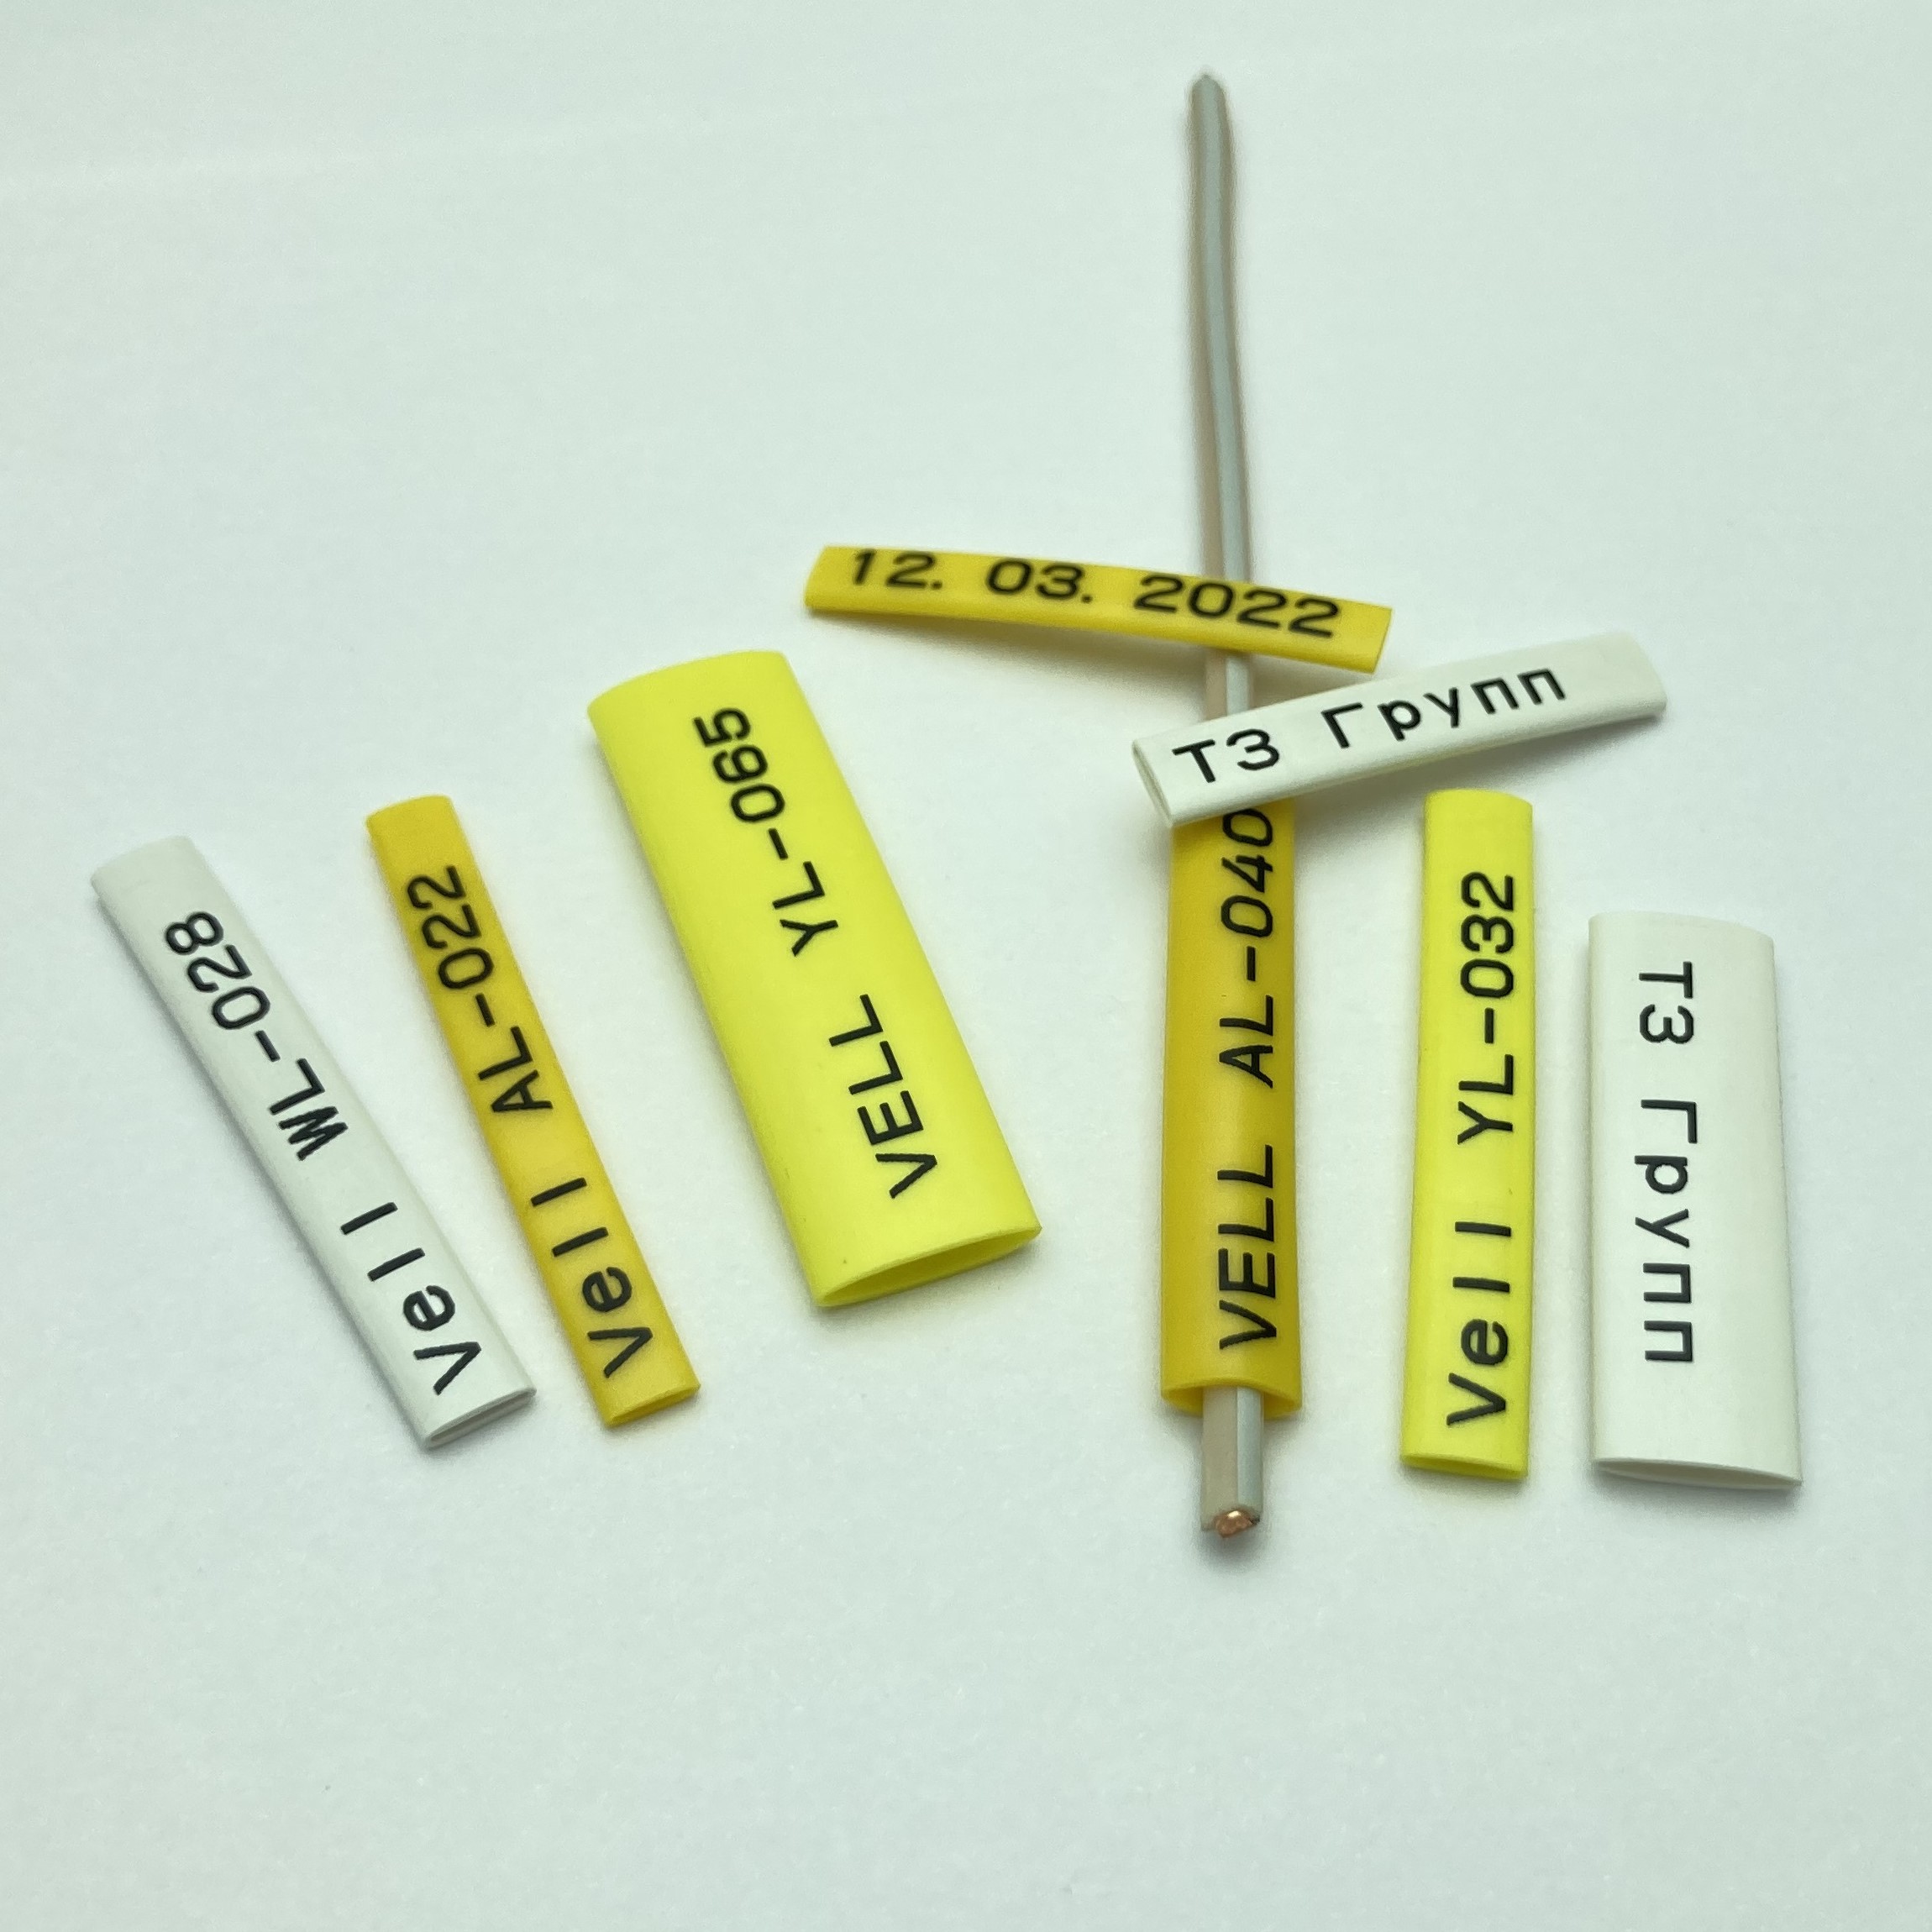 Фото Профиль ПВХ овальный Vell YL-025 для маркировки проводов, Ø 2,5 мм, 200 метров, желтый, аналог Partex PO-03 (самозатухающий) {378008} (4)